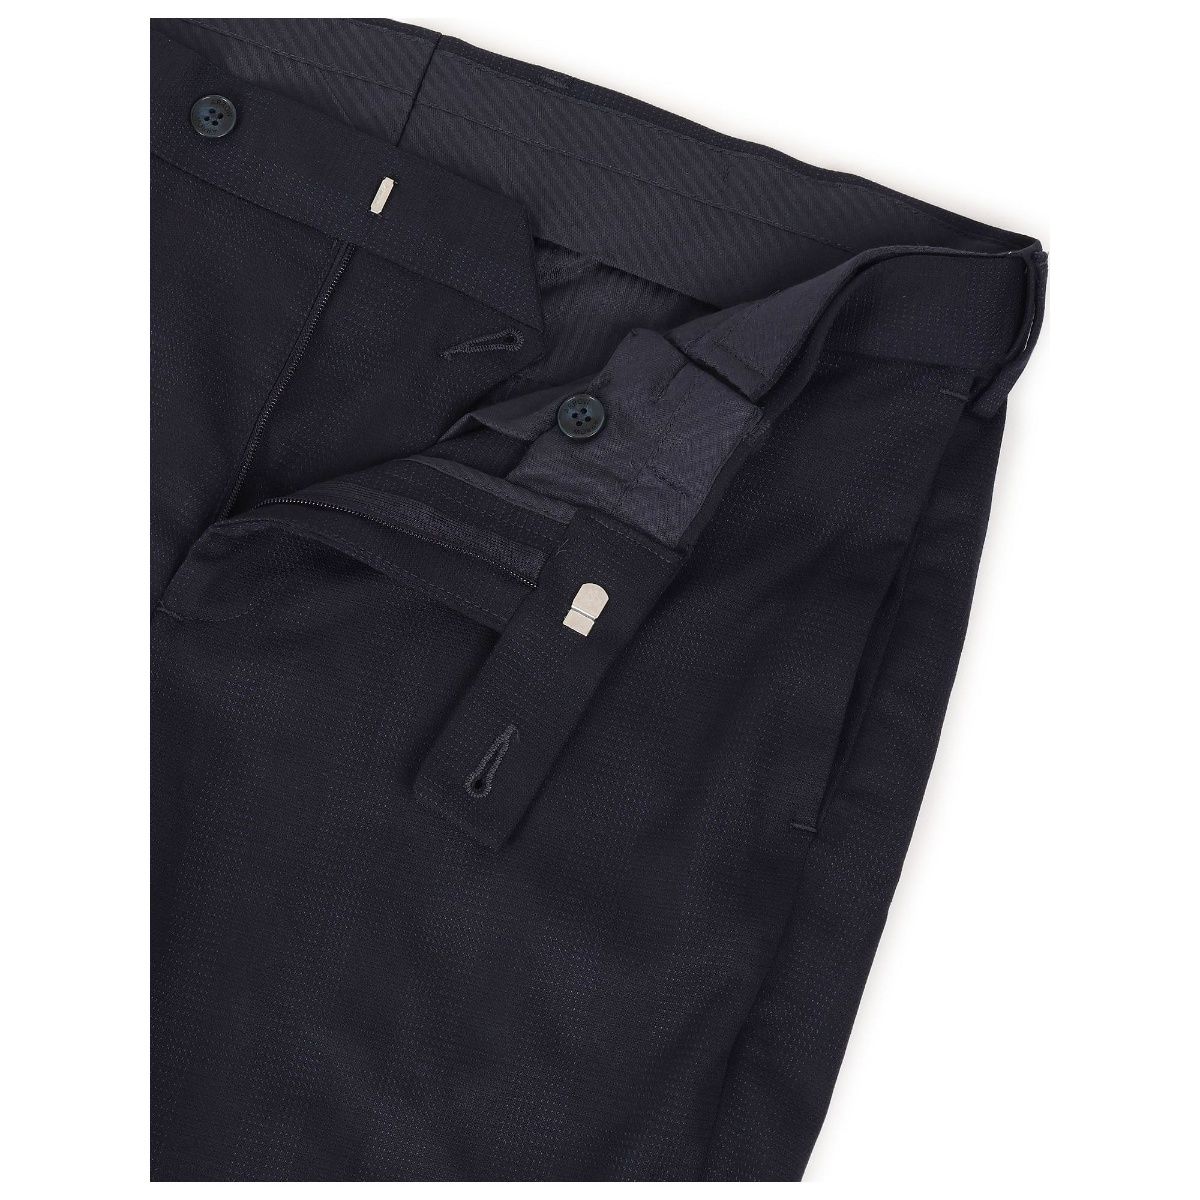 ARROW Skinny Fit Men Blue Trousers - Buy ARROW Skinny Fit Men Blue Trousers  Online at Best Prices in India | Flipkart.com